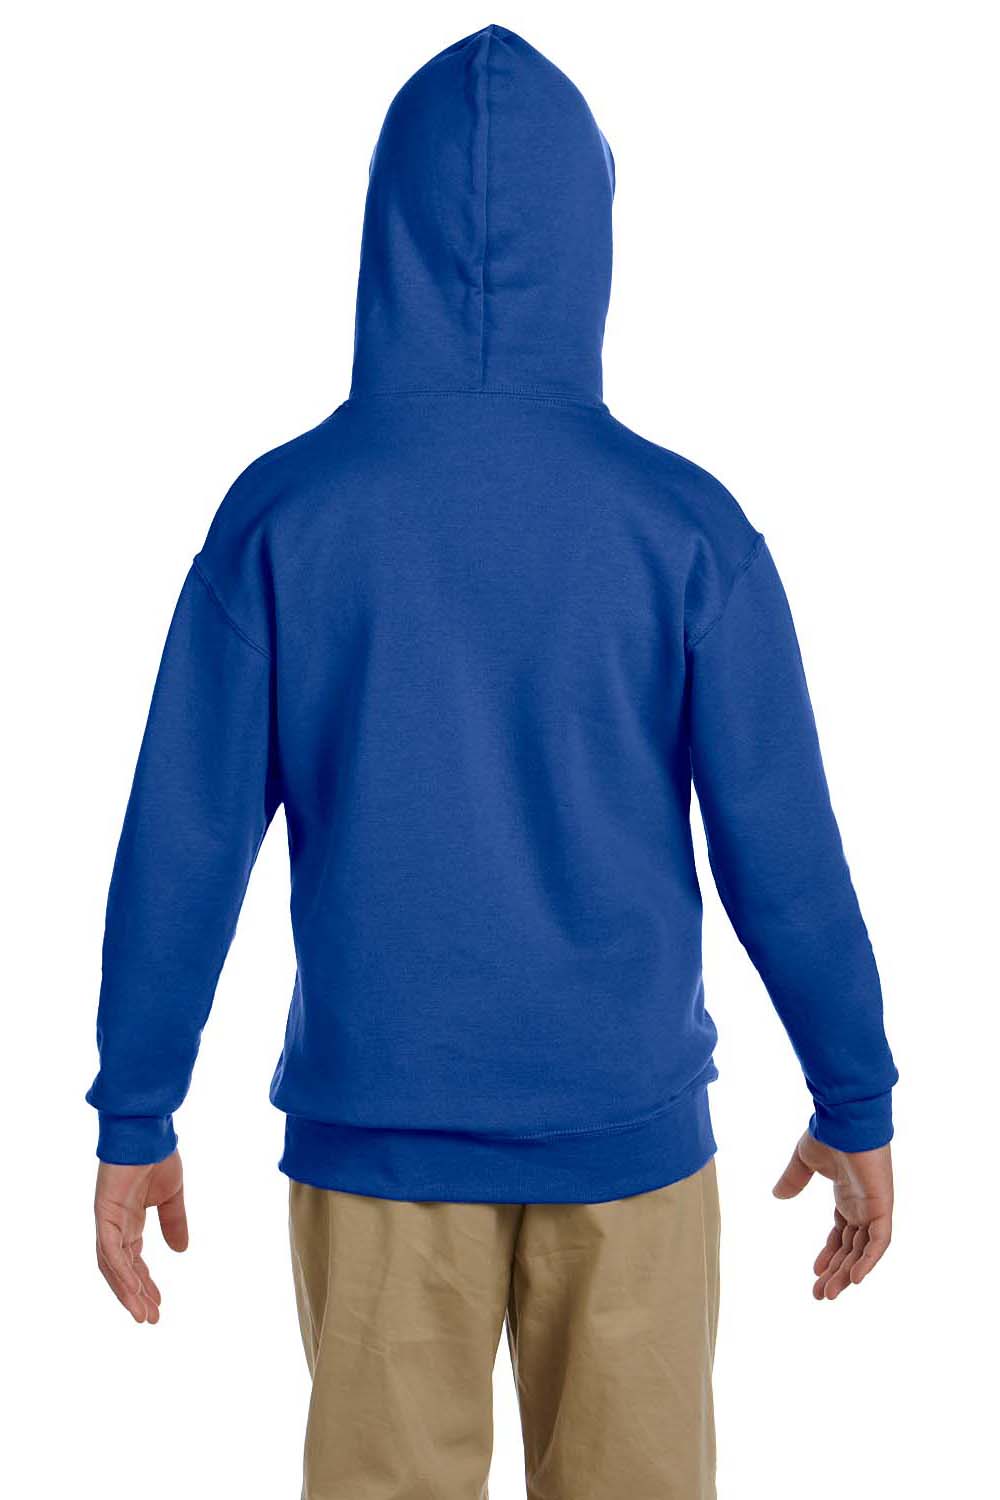 Jerzees 996Y Youth NuBlend Fleece Hooded Sweatshirt Hoodie Royal Blue Back